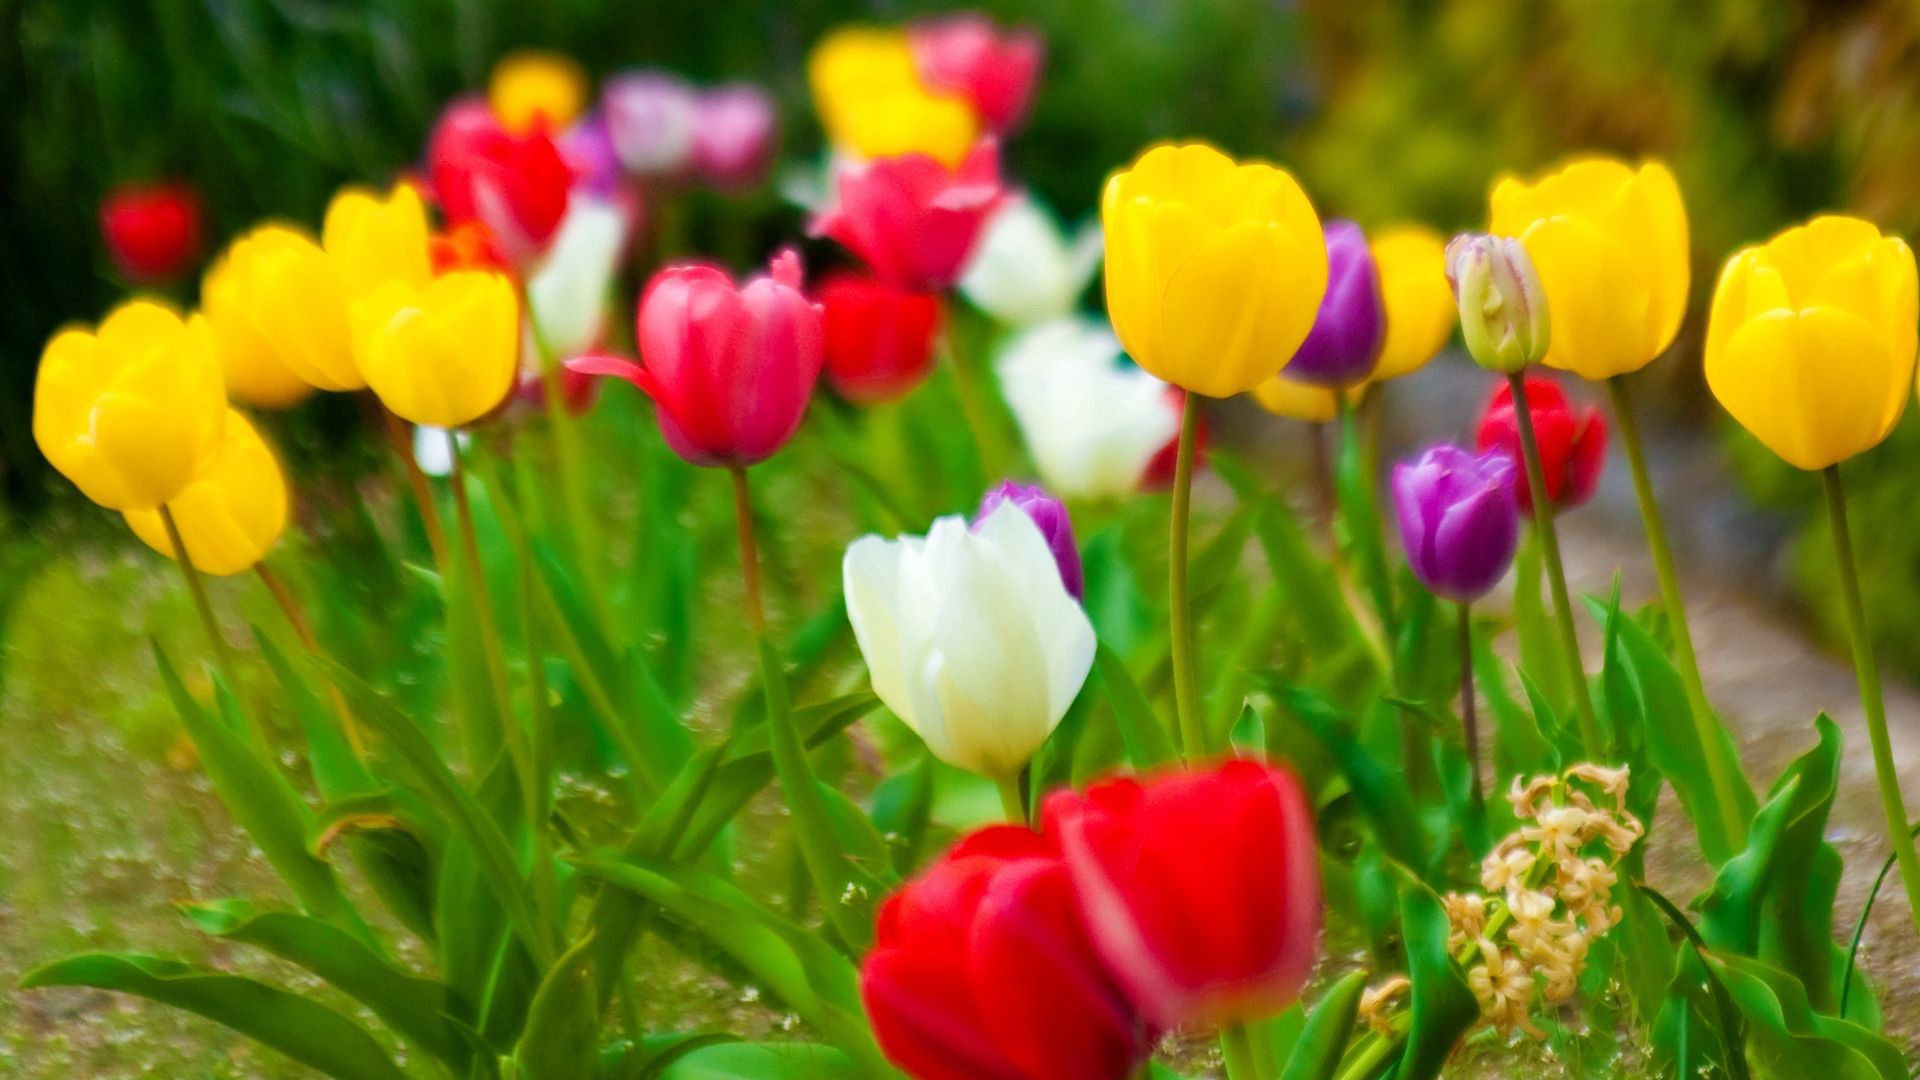 Скачать обои бесплатно Природа, Тюльпаны, Цветы картинка на рабочий стол ПК